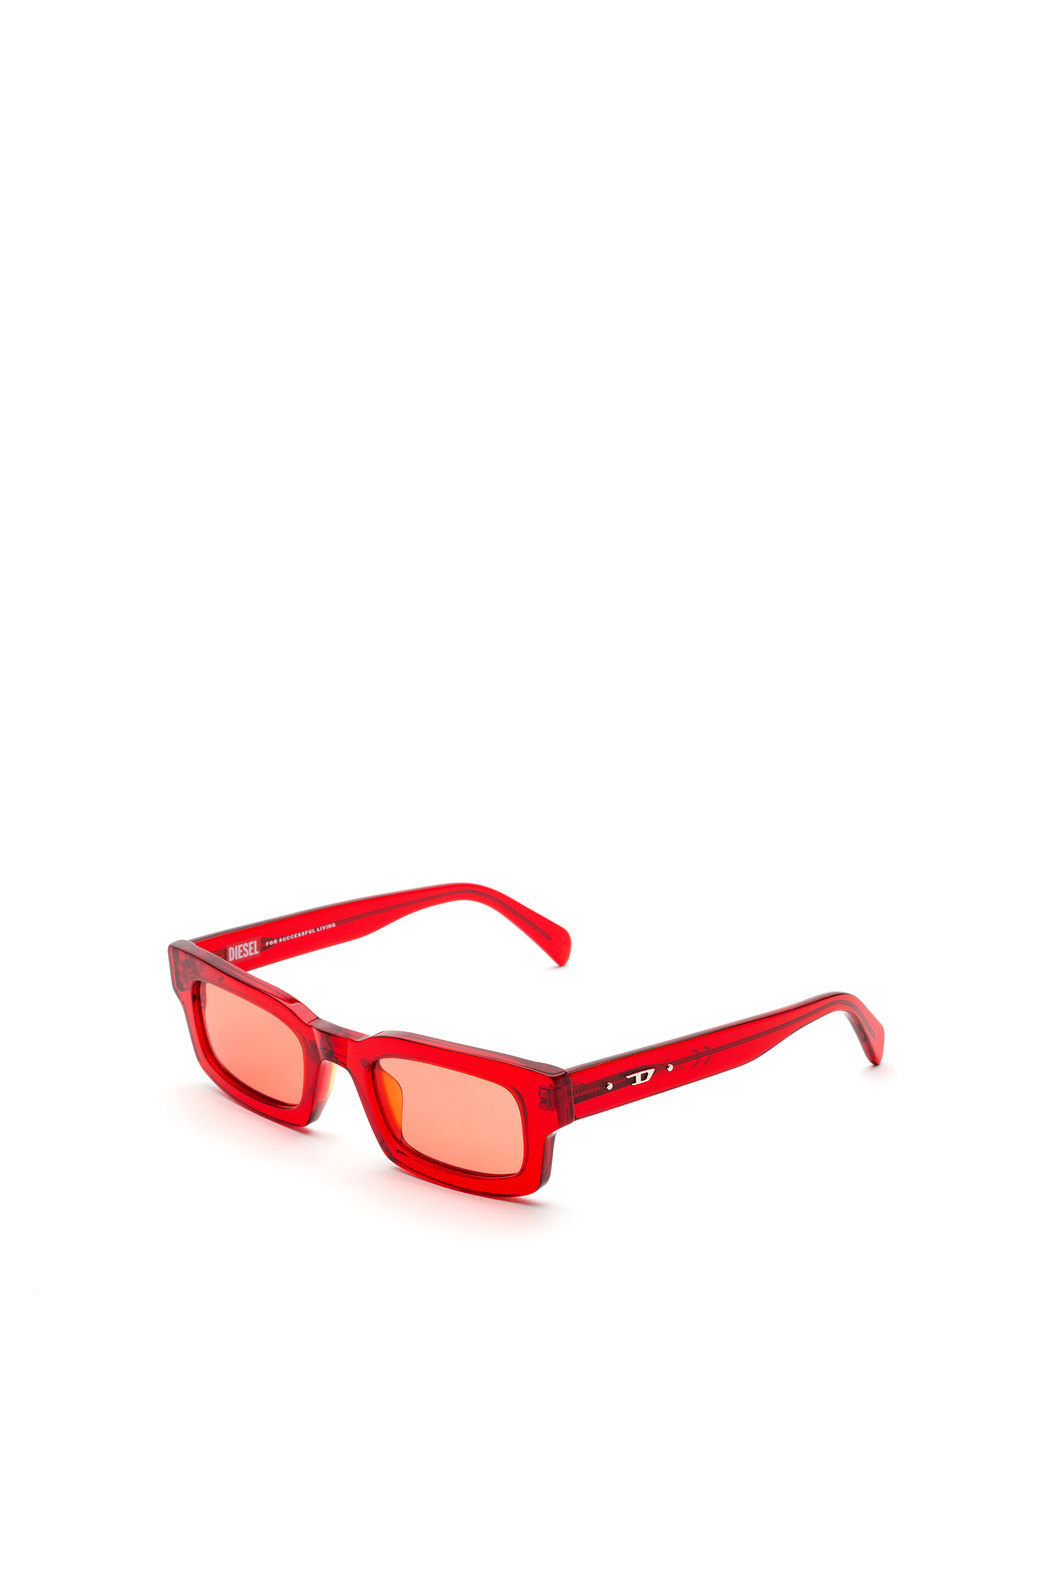 Minimalist sunglasses